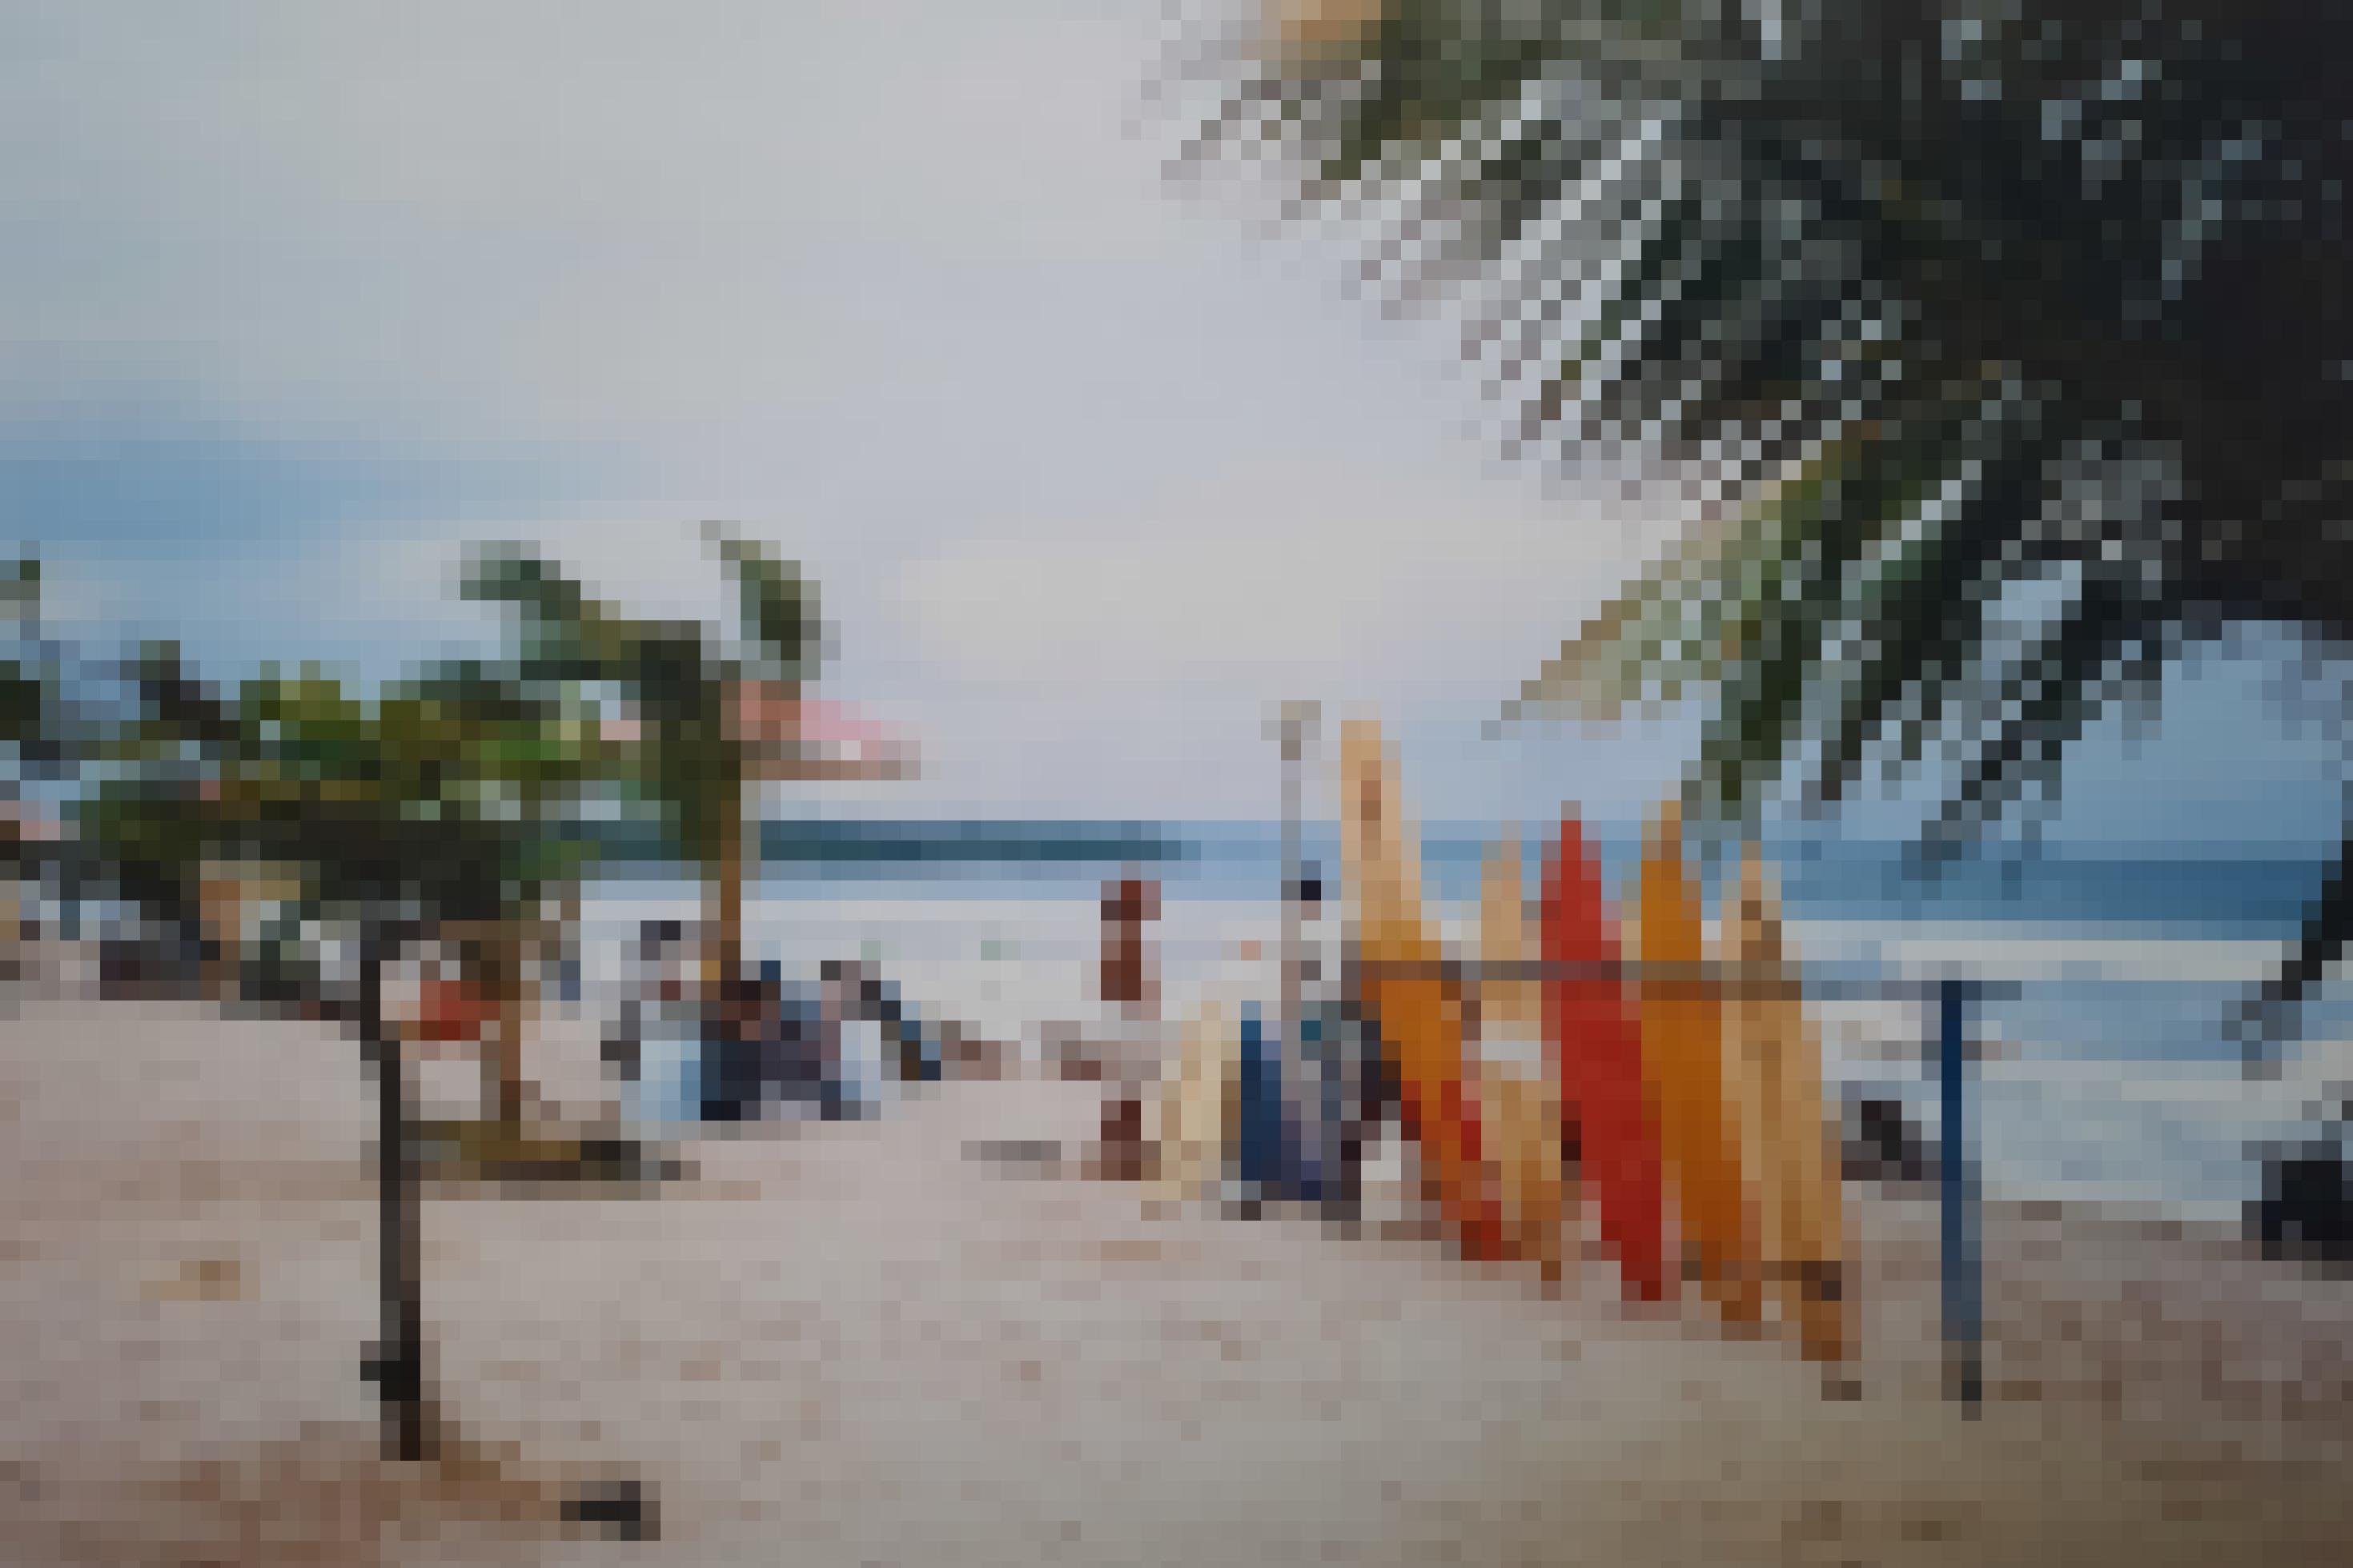 Leerer Strand von Kuta im Süden von Bali: Eine Gruppe Souvenirverkäufer und ein Surfboardverleiher warten auf Kundschaft.